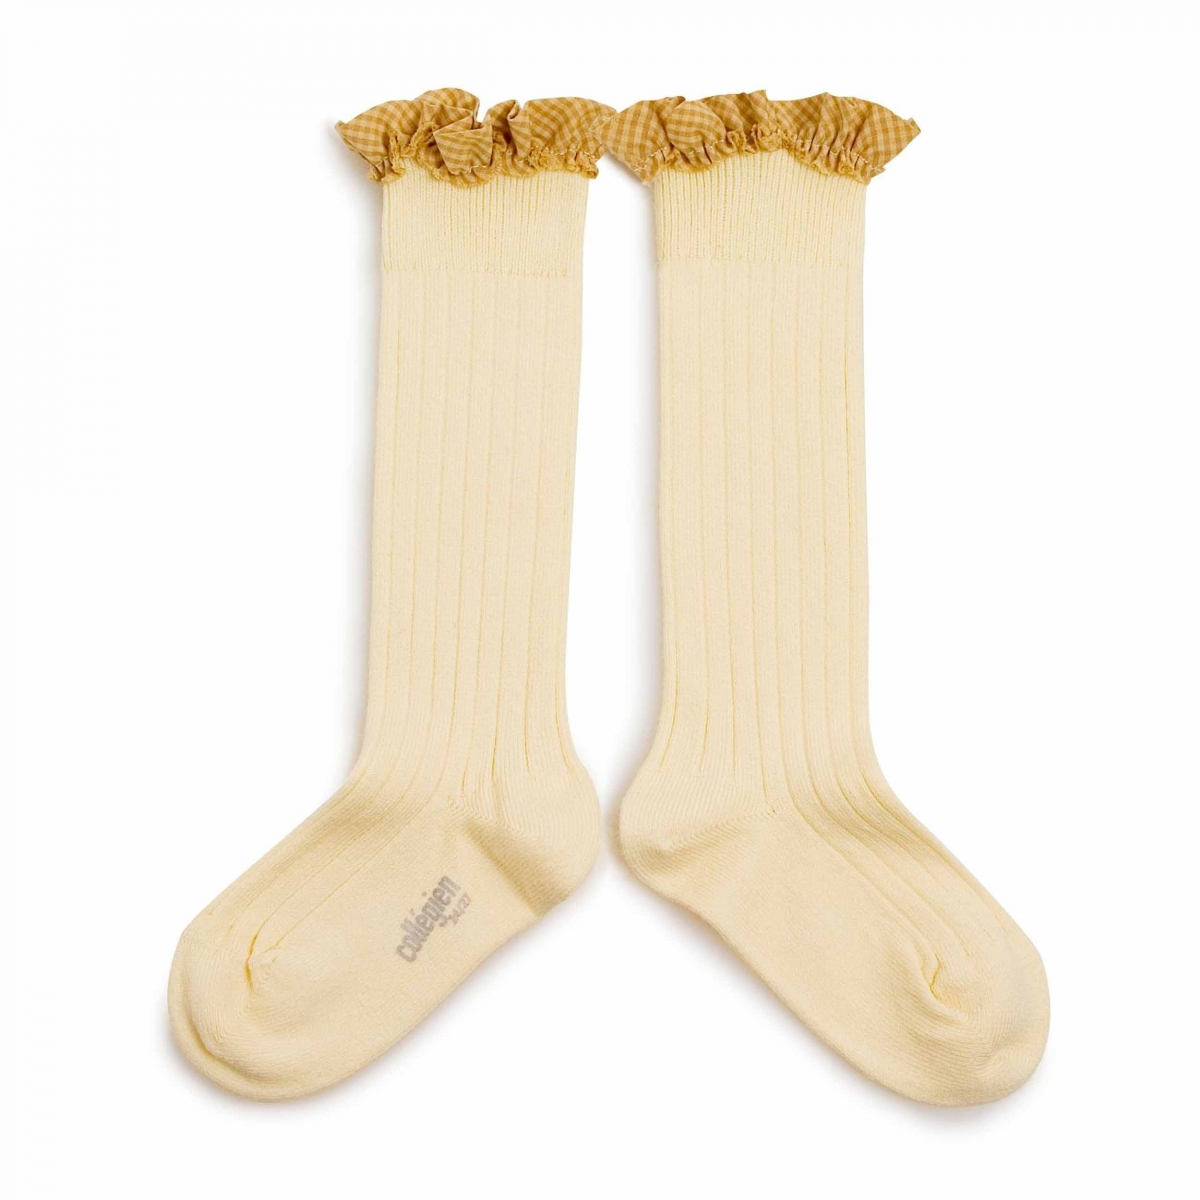 Collégien - Knee high socks Apolline vanille - Tights & socks - 2961 039 Apolline 